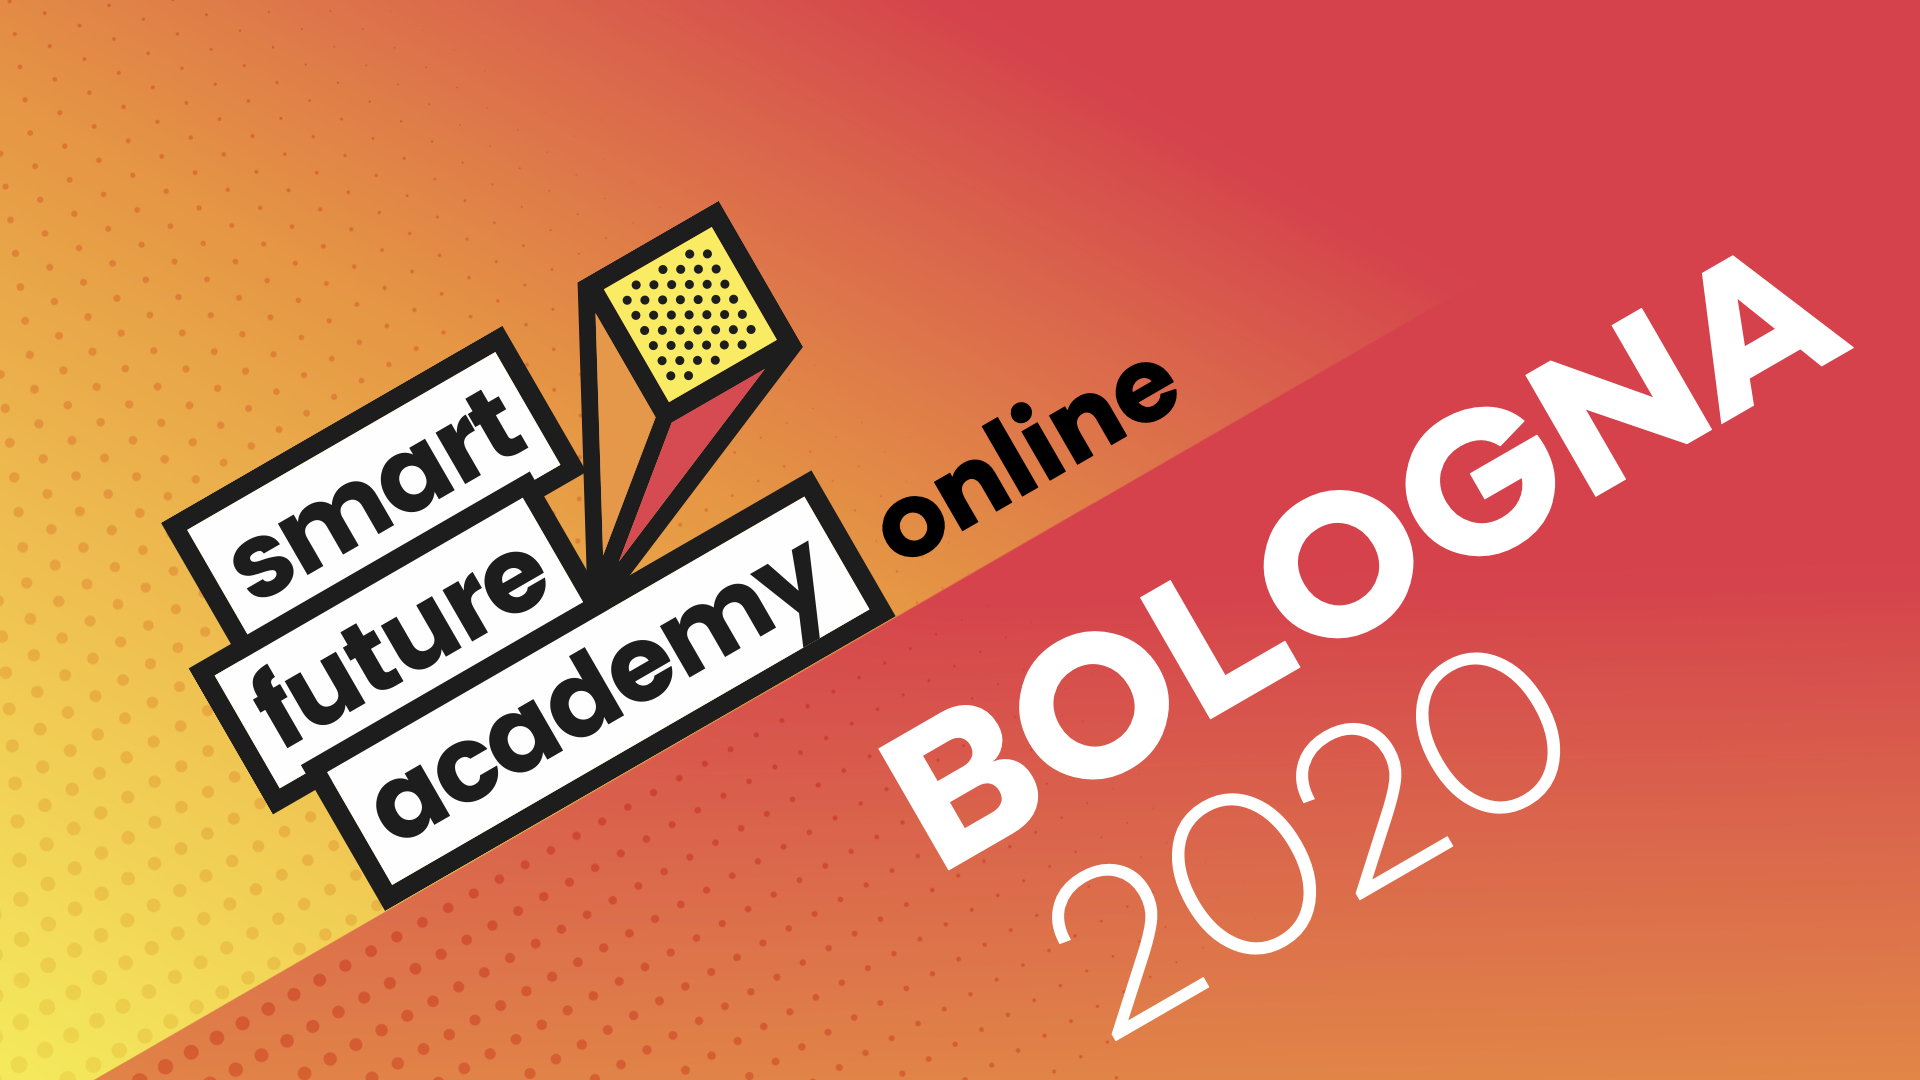 Bologna Online 2020